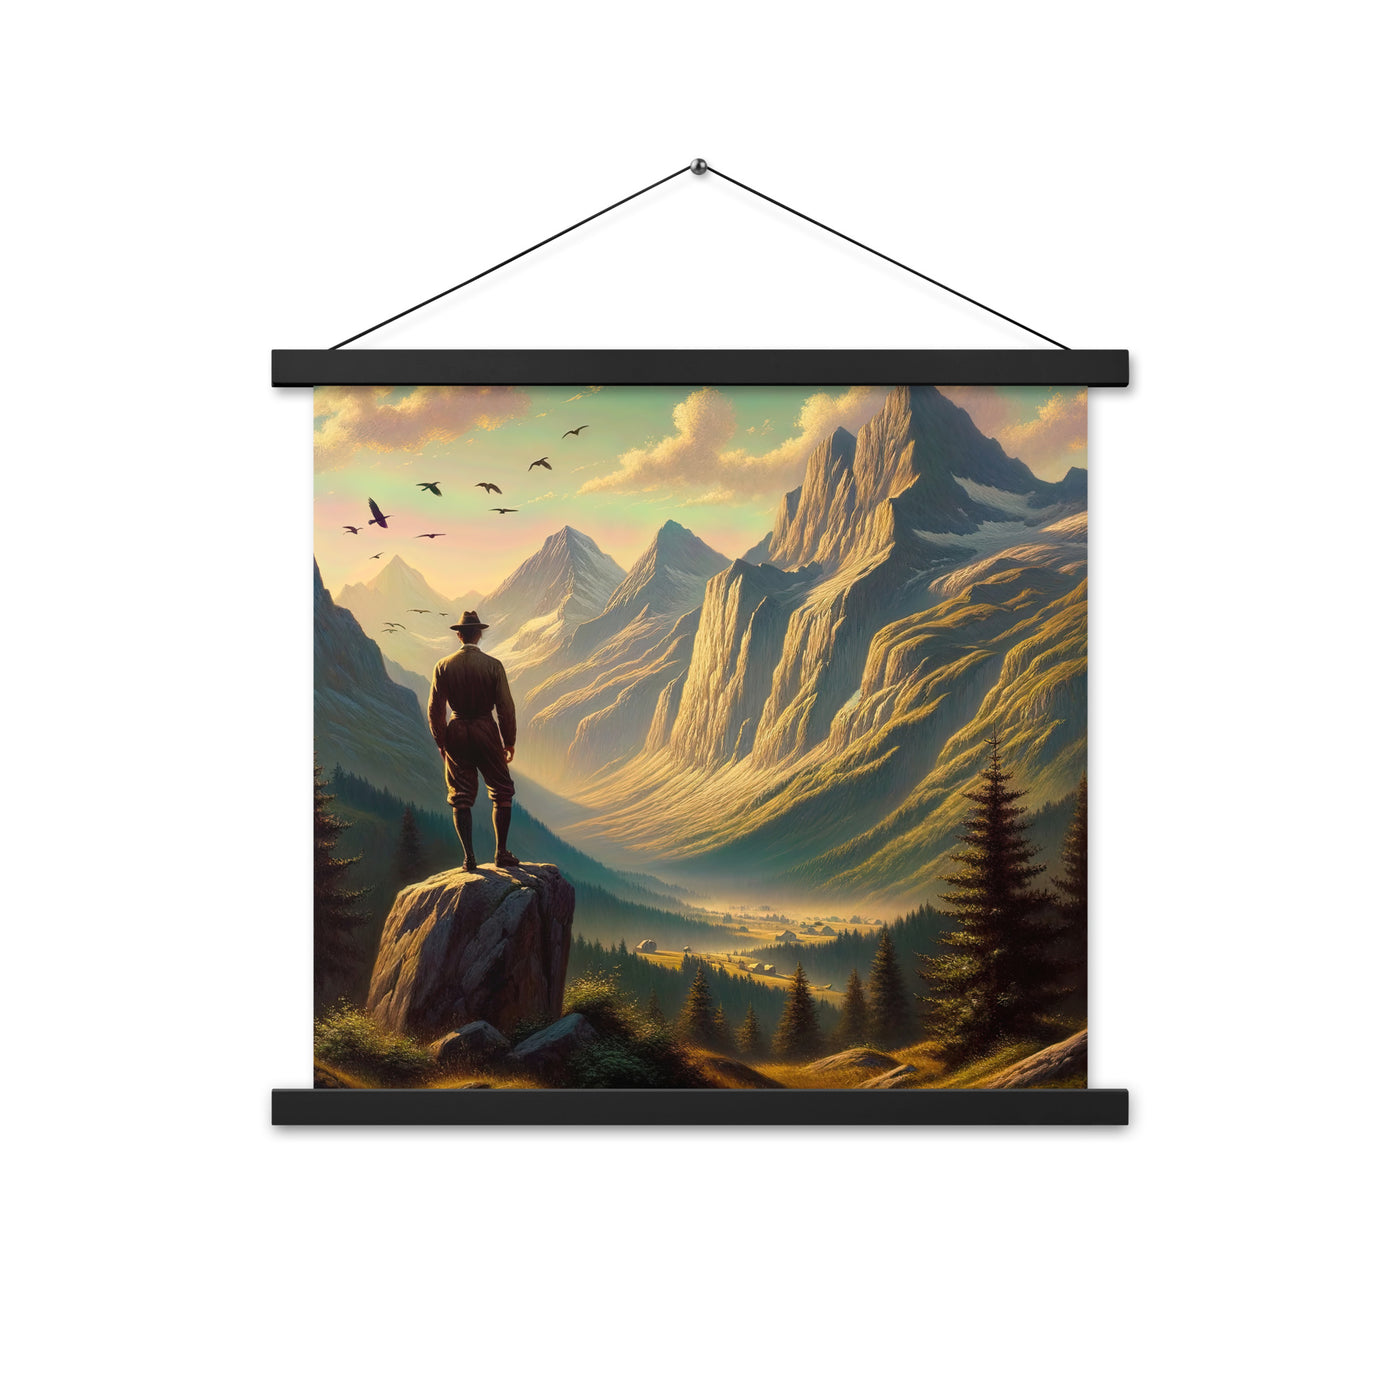 Ölgemälde eines Schweizer Wanderers in den Alpen bei goldenem Sonnenlicht - Premium Poster mit Aufhängung wandern xxx yyy zzz 45.7 x 45.7 cm